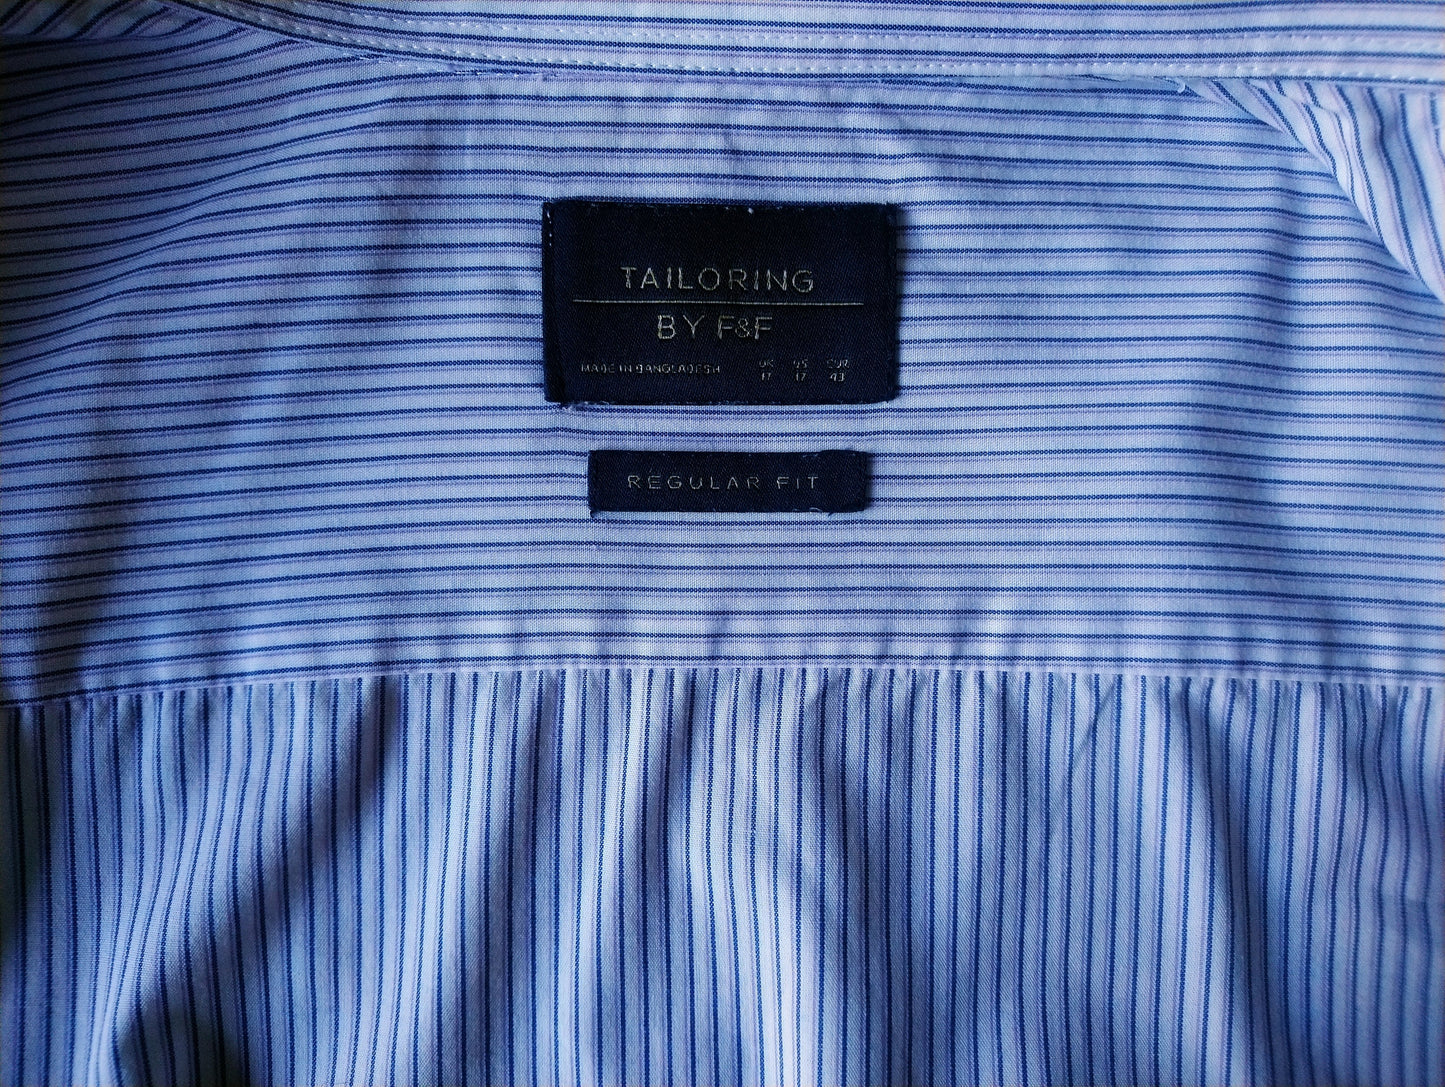 Chemise à adaptation F & F. Stripe violette blanche bleue. Taille XL / XXL